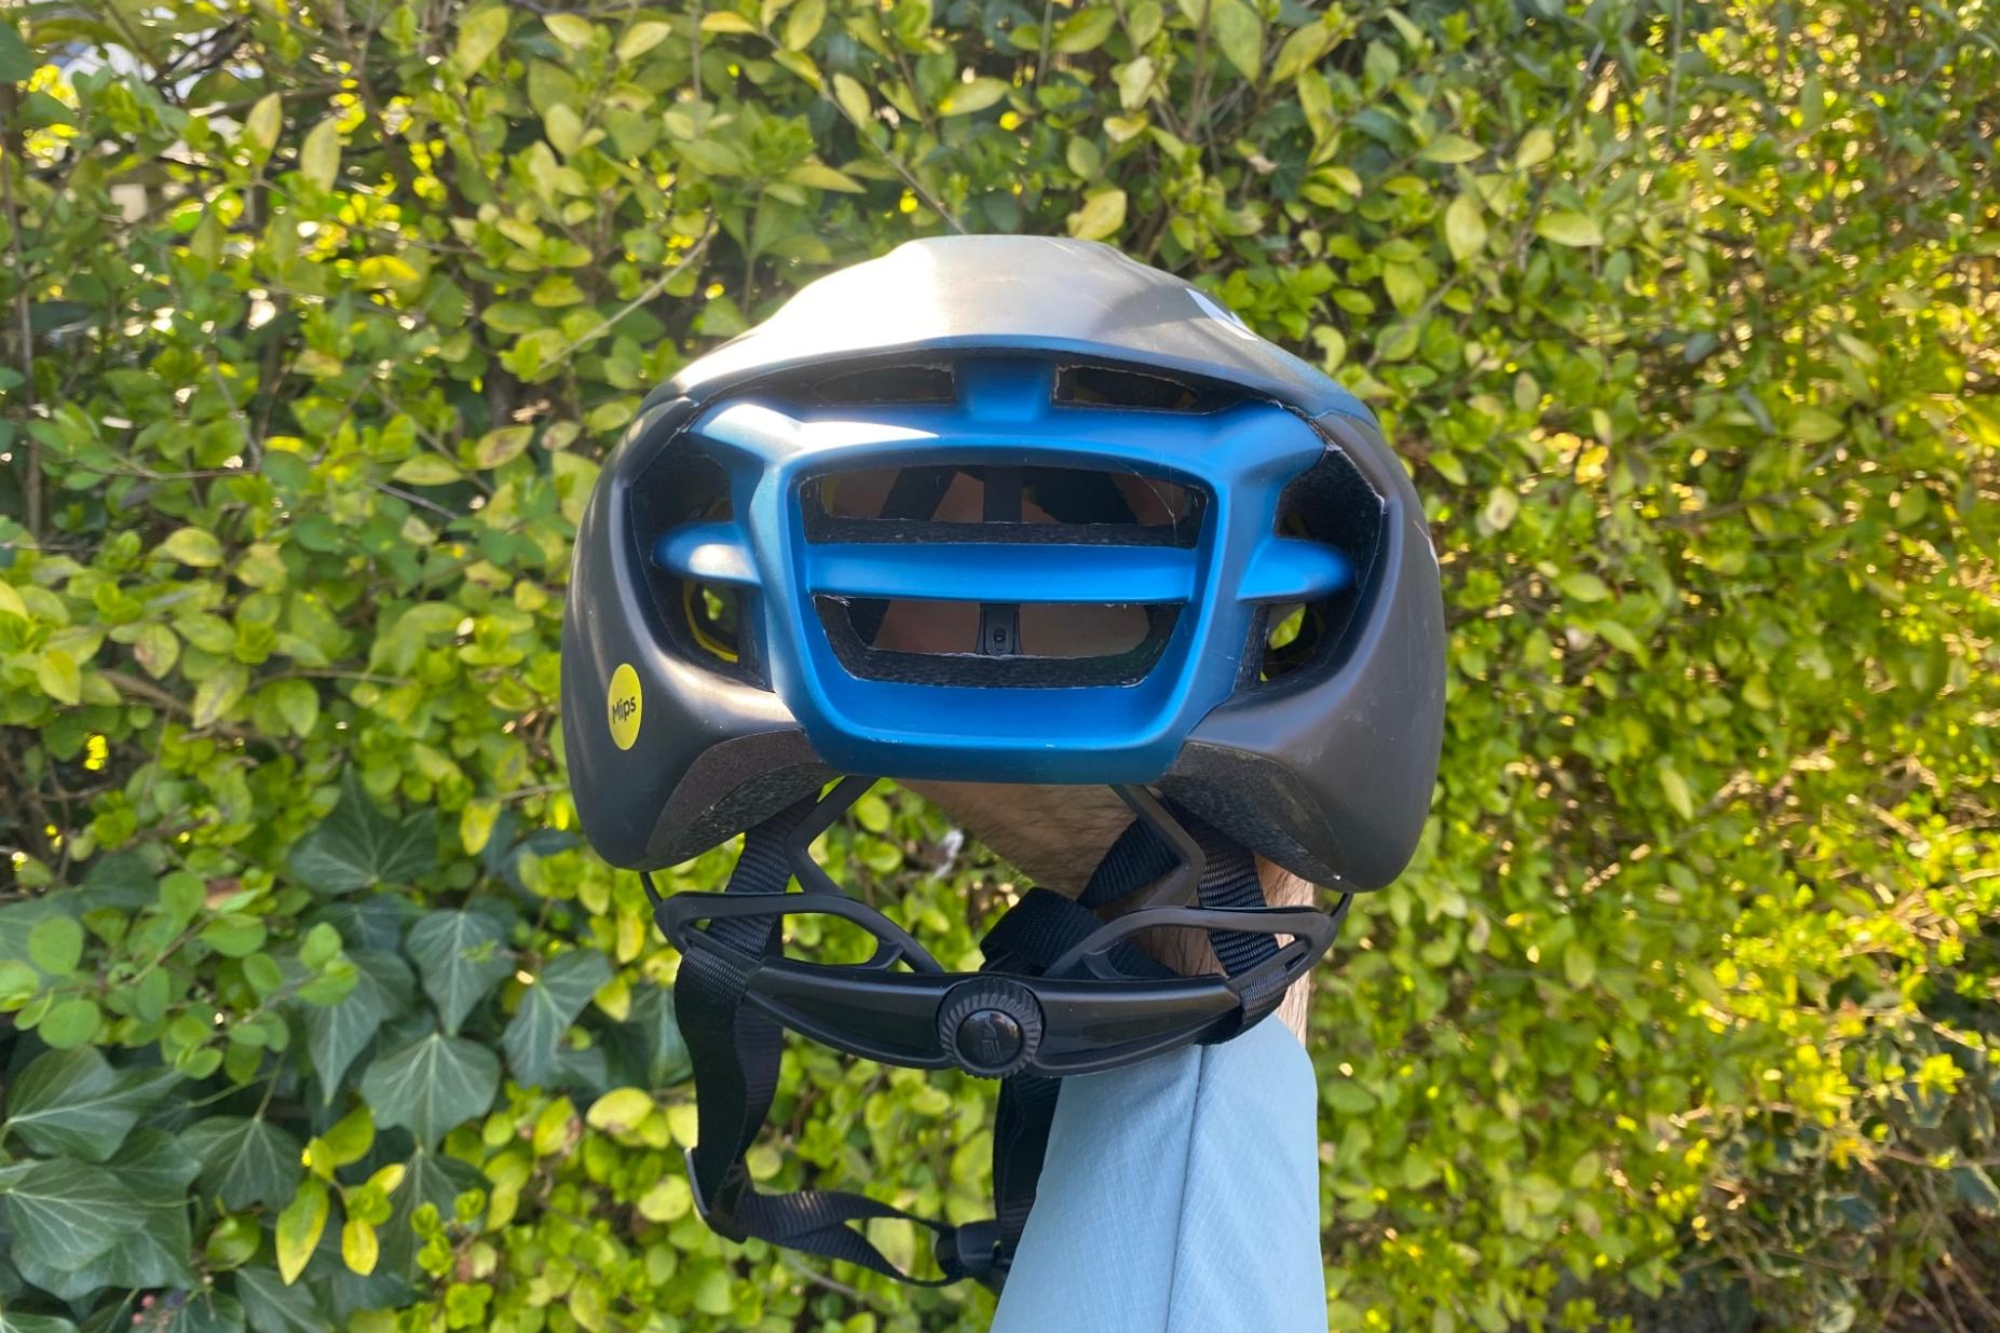 MET Manta MIPS helmet being held by a male cyclist